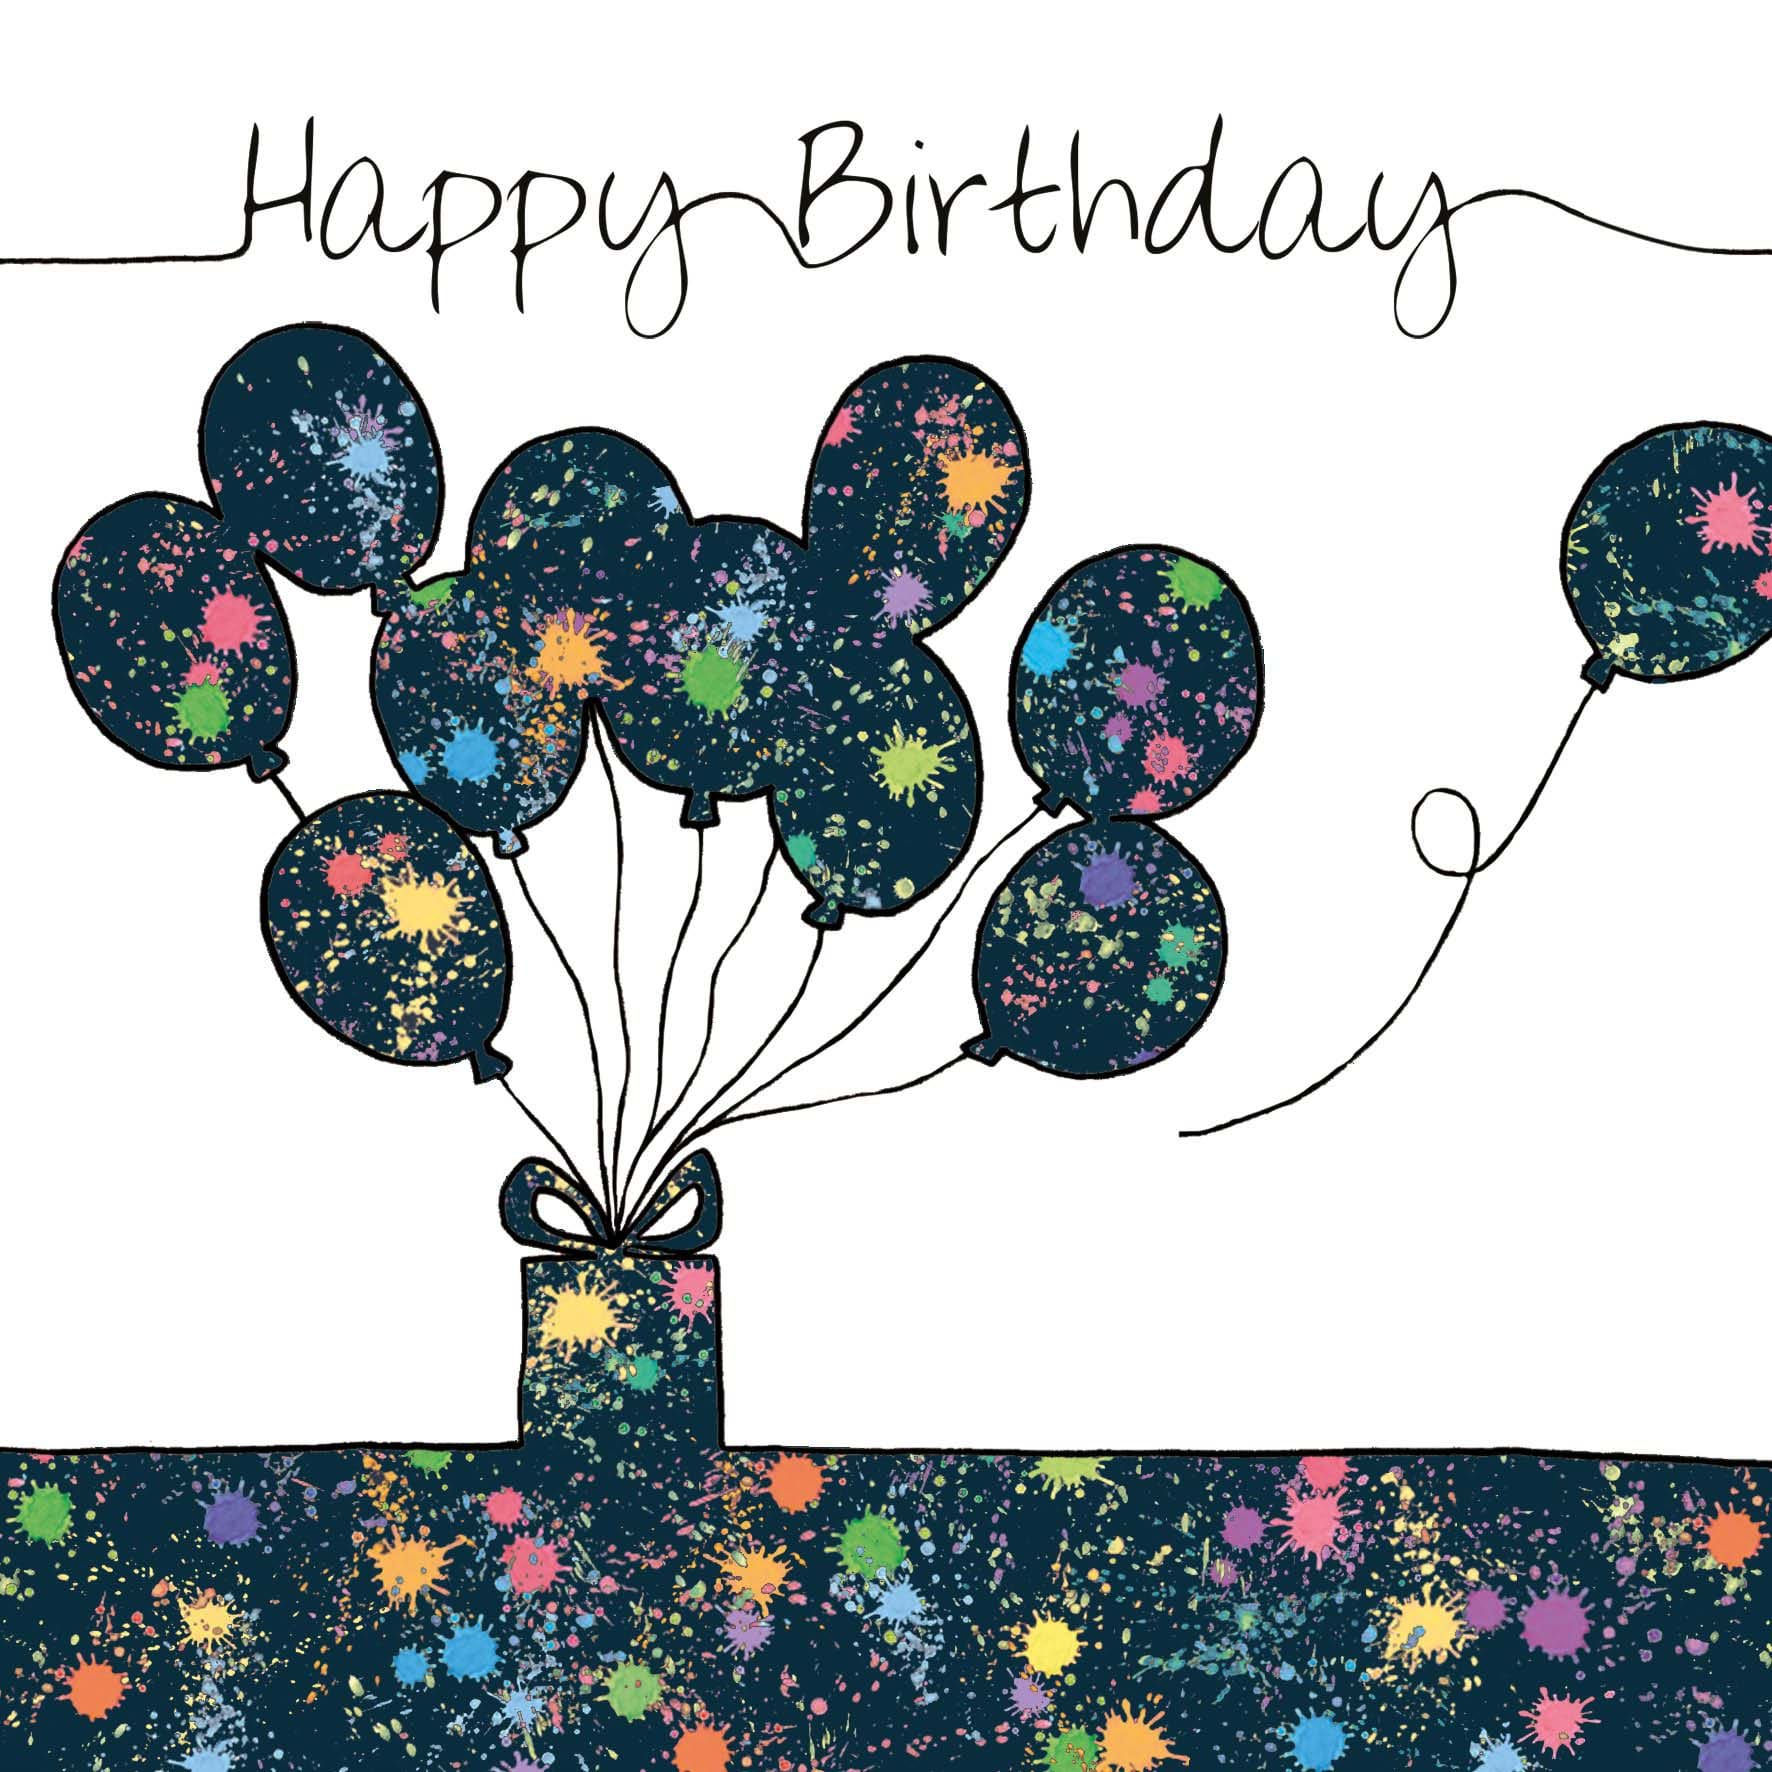 Paint Splat Balloons Birthday Card